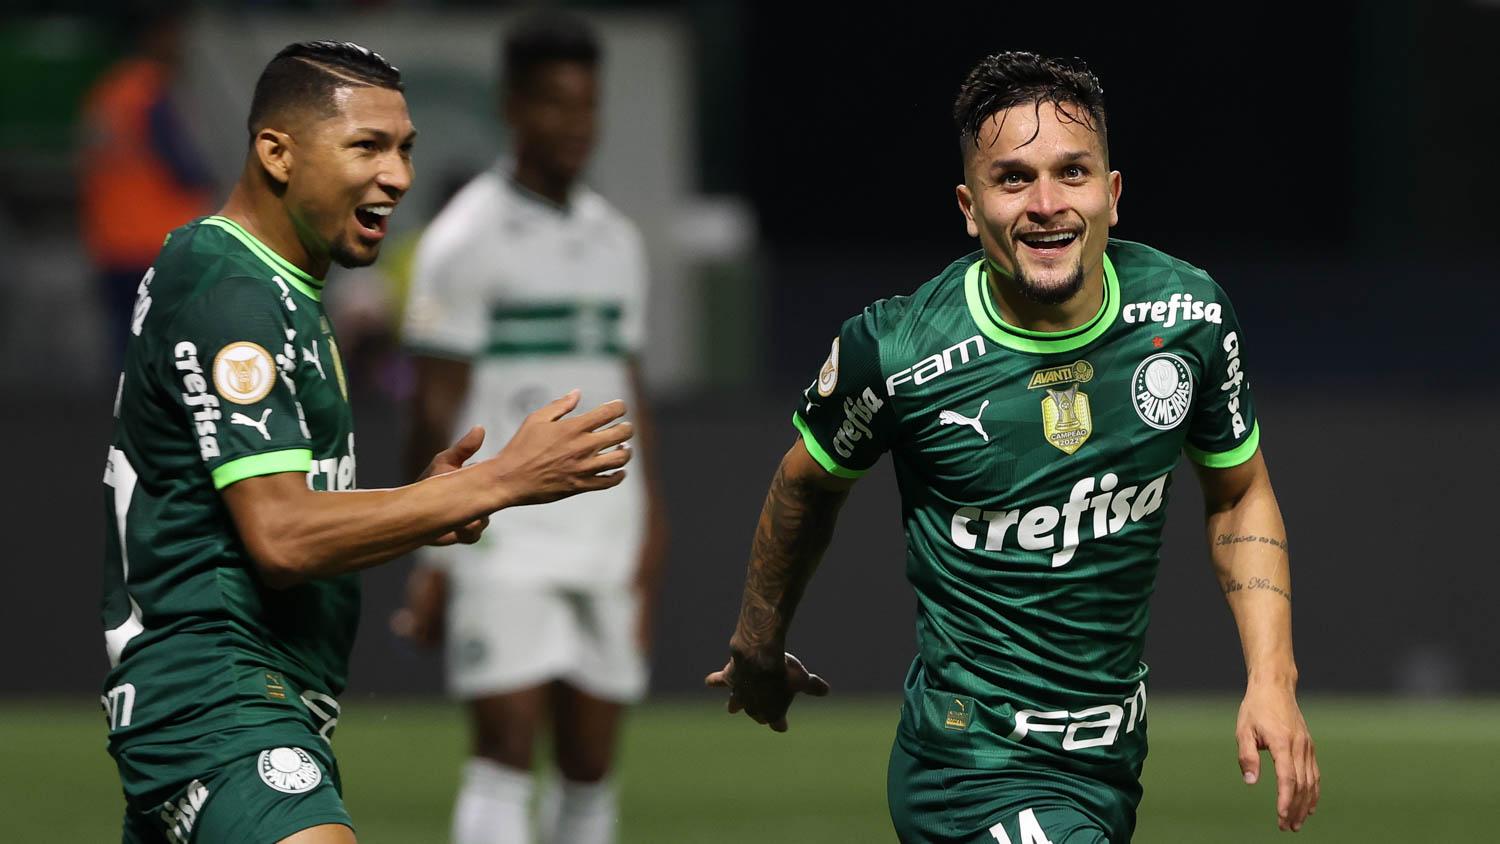 Palpite: Palmeiras x Barcelona (EQU) - Libertadores - 07/06/2023